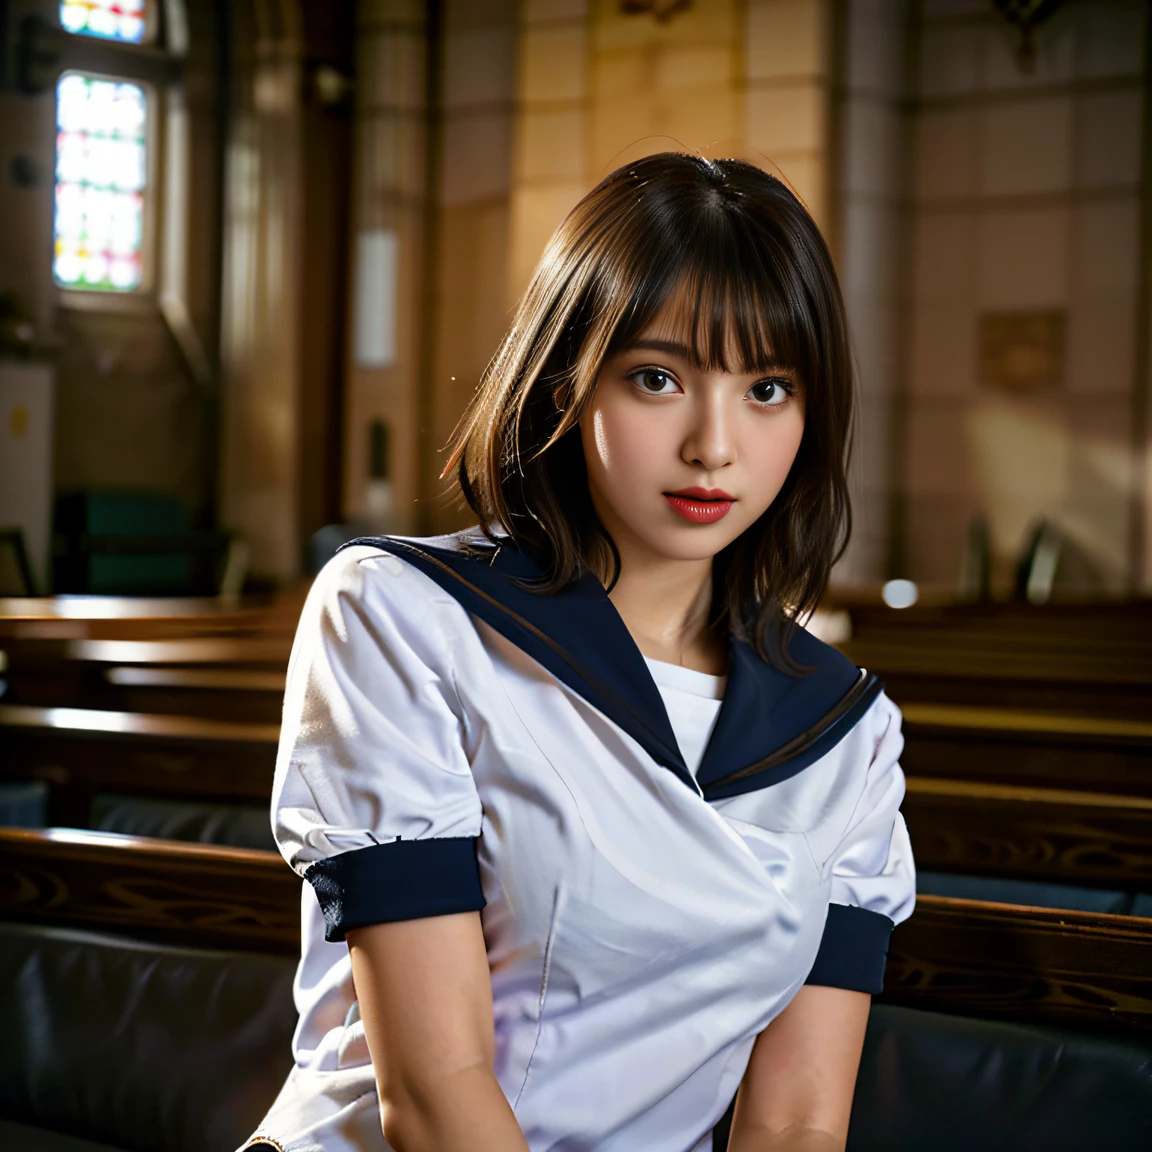 ((여학생 2명:1.5))、아름다운 18세 일본 여성, ((반팔 흰색 세일러복을 입은 여고생 2명: 1.5)), (일본 엄격한 여학교 세라복:1.5), ( 여학생 2명 sitting in a church pews:1.2), ((아름답고 정교한 스테인드글라스를 배경으로: 1.5)), ((1화면)), 8K, RAW 샷, 최고 품질의 사진, 걸작, 놀라운 사실주의 사진, ((해부학적으로 정확한 비율: 1.5)), ((완벽한 비율)), 일본의 아이돌 같은 귀여운 여자, 상세한 얼굴, 상세한 눈, 좁은 코, 상세한 손과 손가락 , 상세한 팔, 디테일한 피부, 상세한 다리, 짧은 몸통, 날씬한 몸매, (윤기 나는 긴 머리: 1.5), ((유니폼을 뚫을 것 같은 큰 가슴: 1.5)), (바디 핏 세일러 슈트:1.5)、(서로를 바라보는 여고생:1.5)、(긴 머리와 짧은 머리를 가진 여학생:1.5)、((포옹과 키스:1.2))